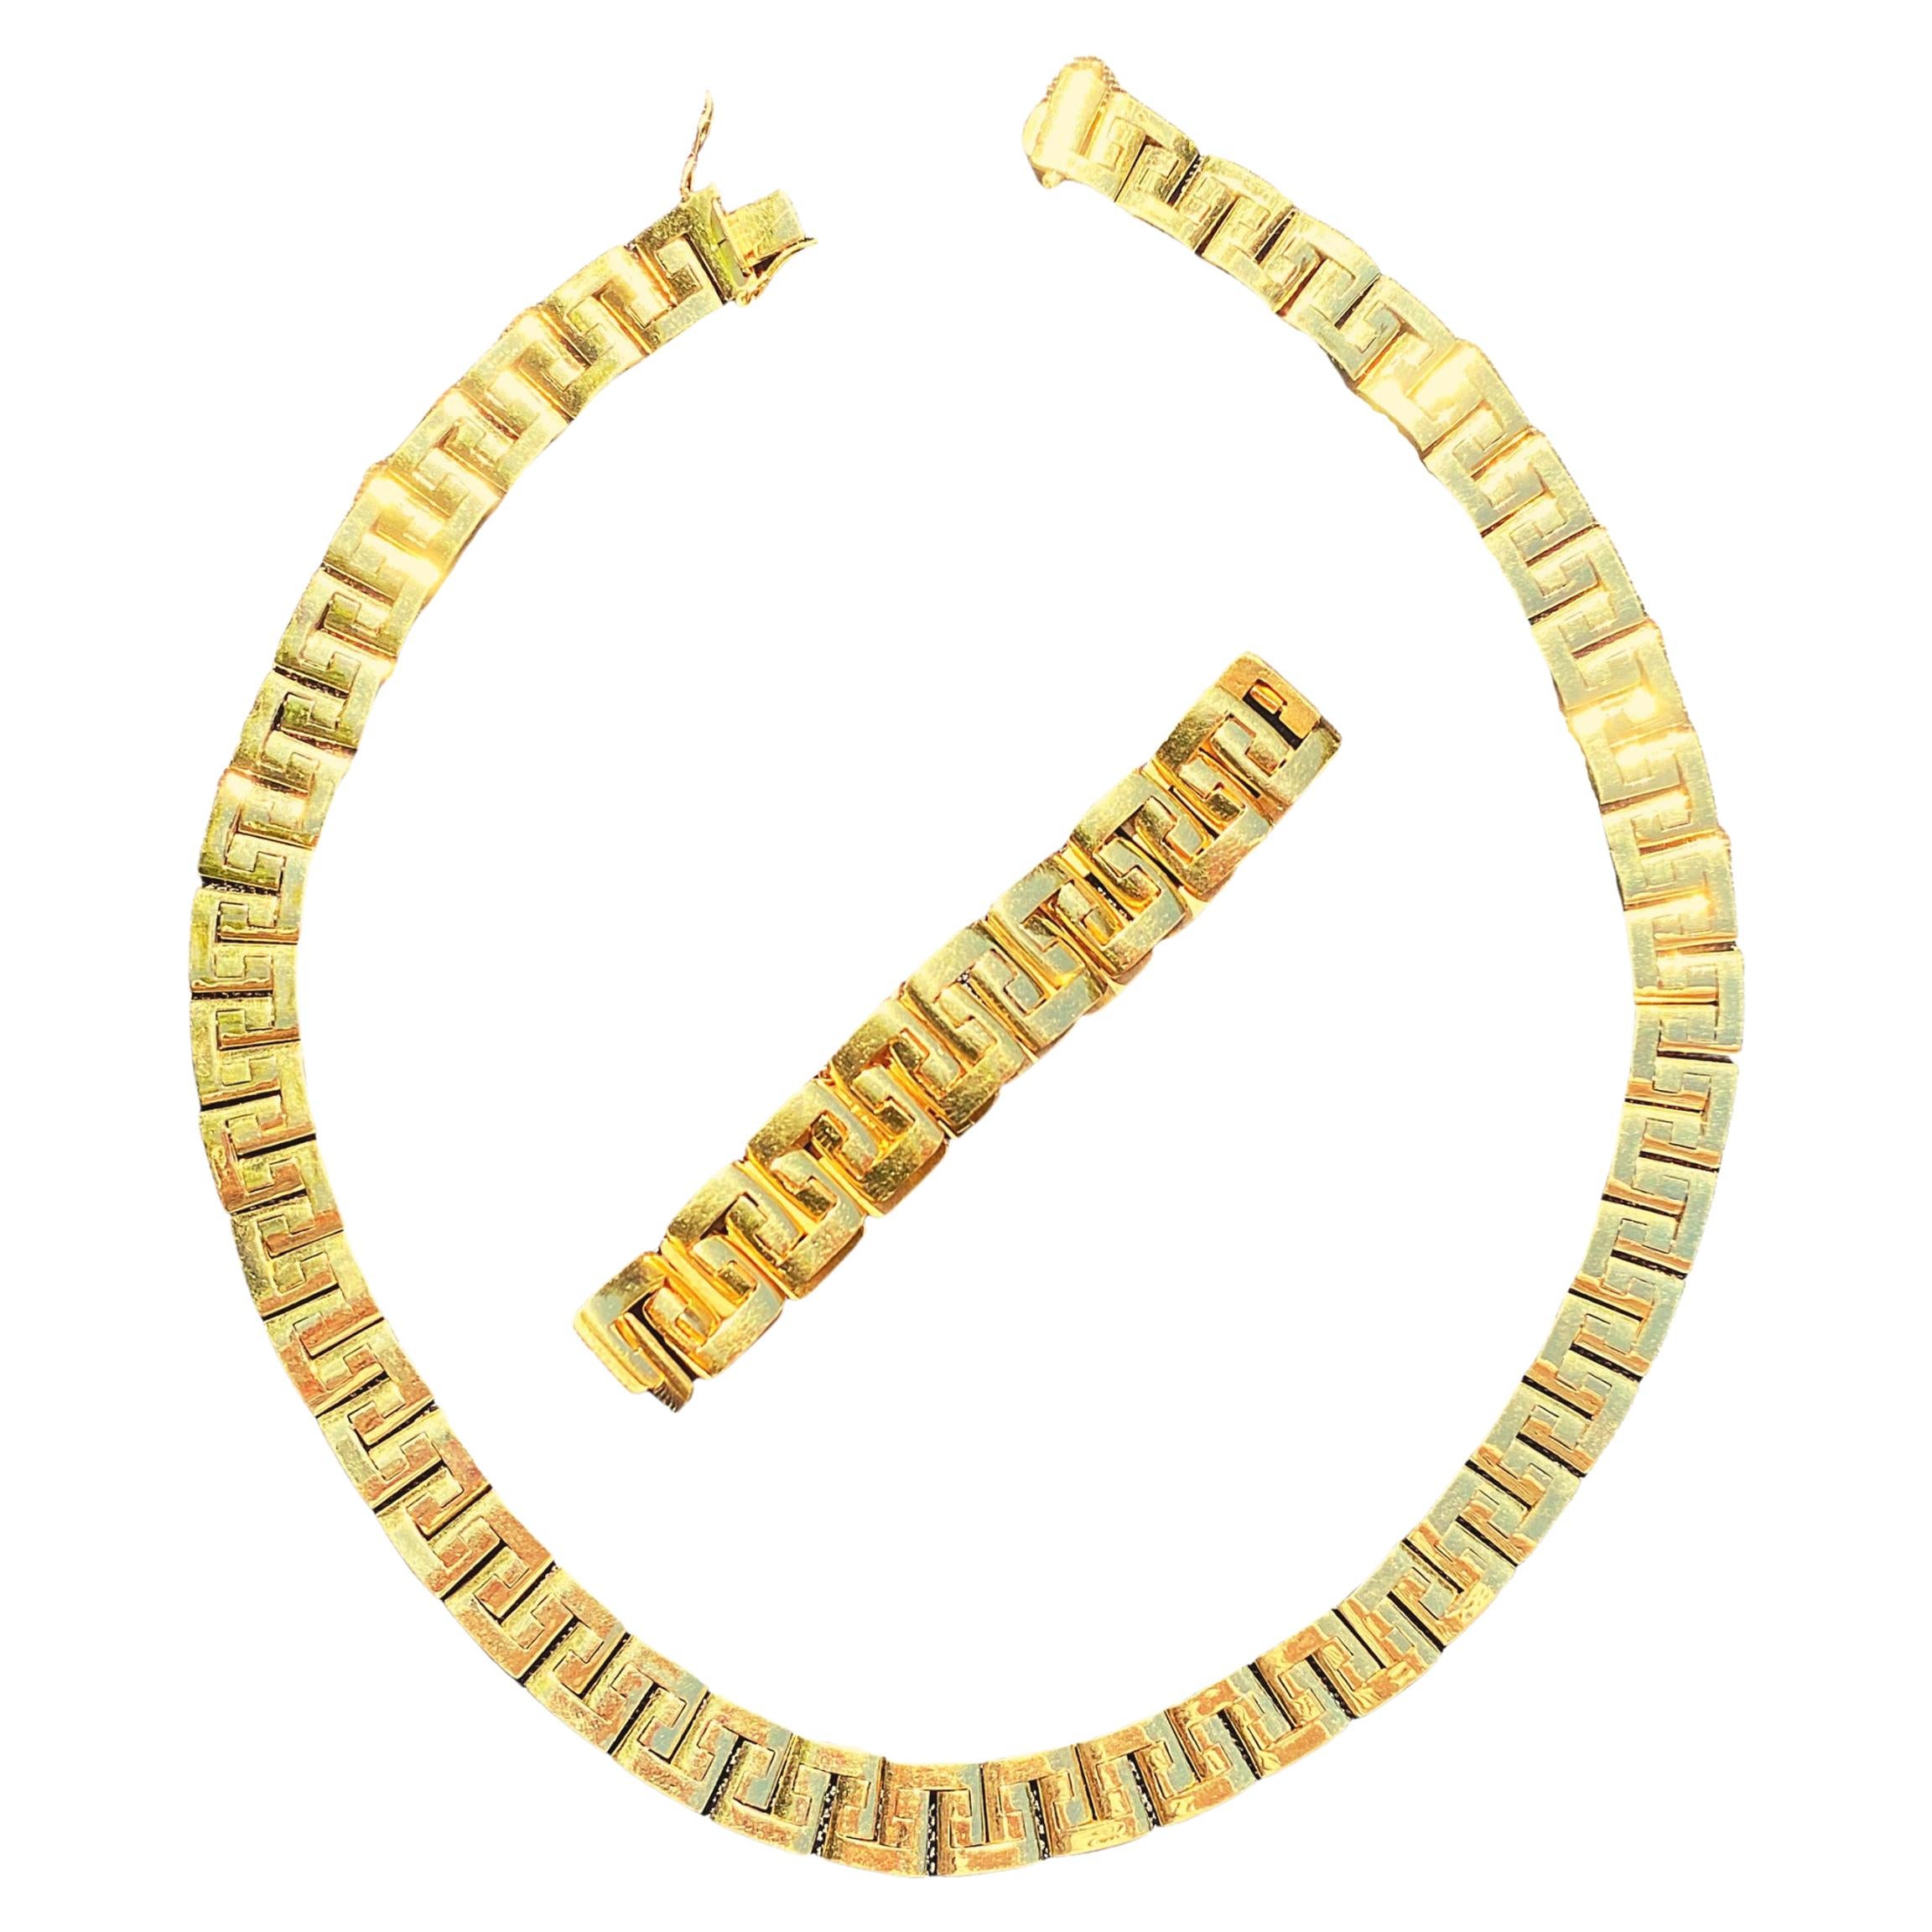 157 Grams 18 Karat Gold Link Chain Design Gold Necklace and Bracelet Men's Set For Sale